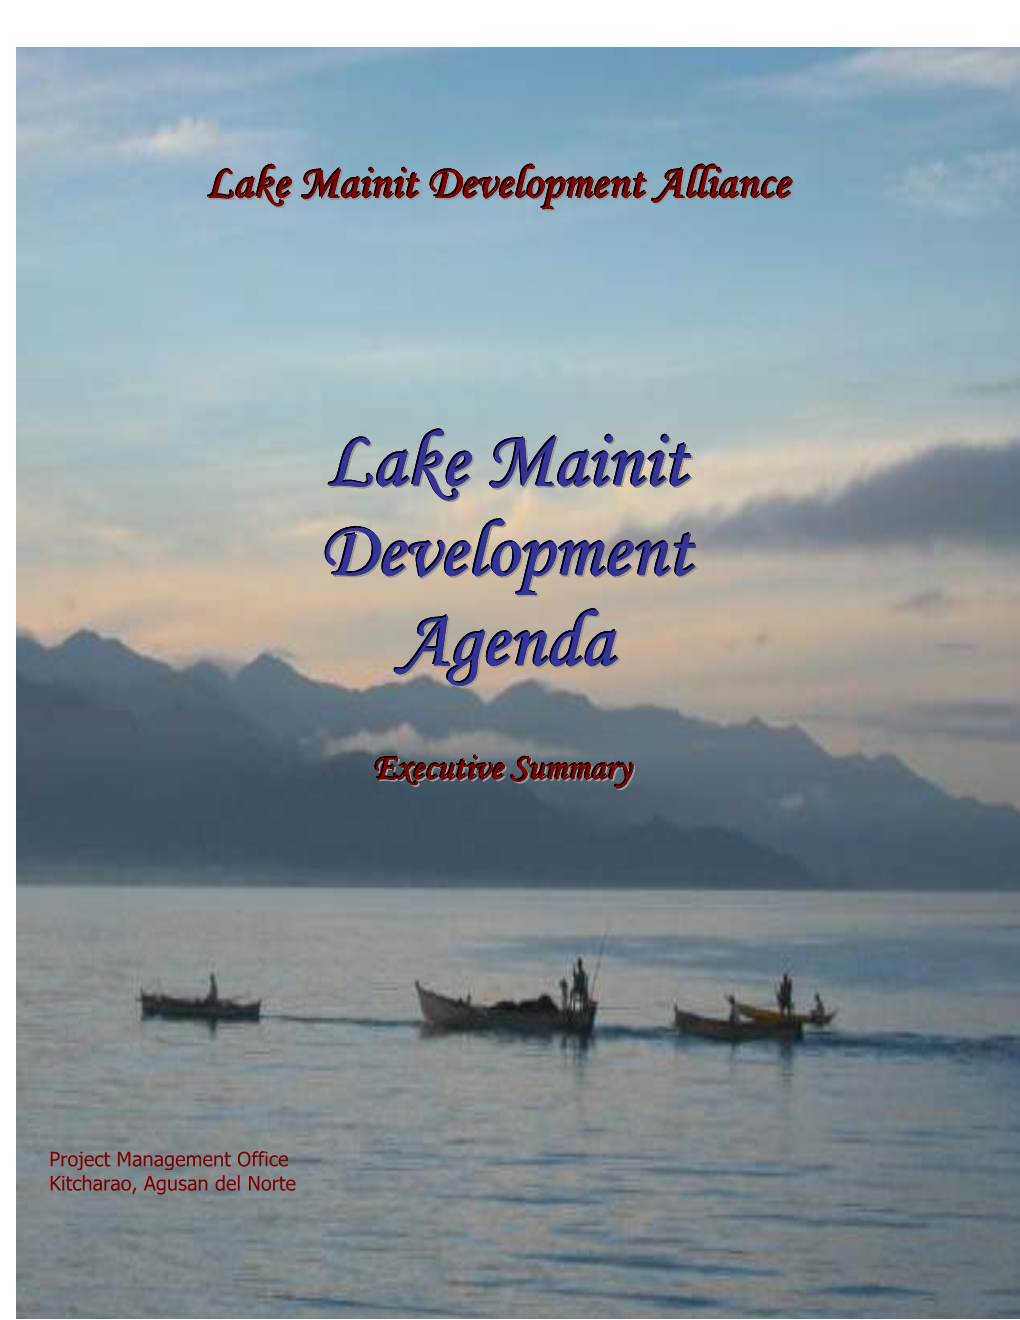 Lake Mainit Executive Agenda